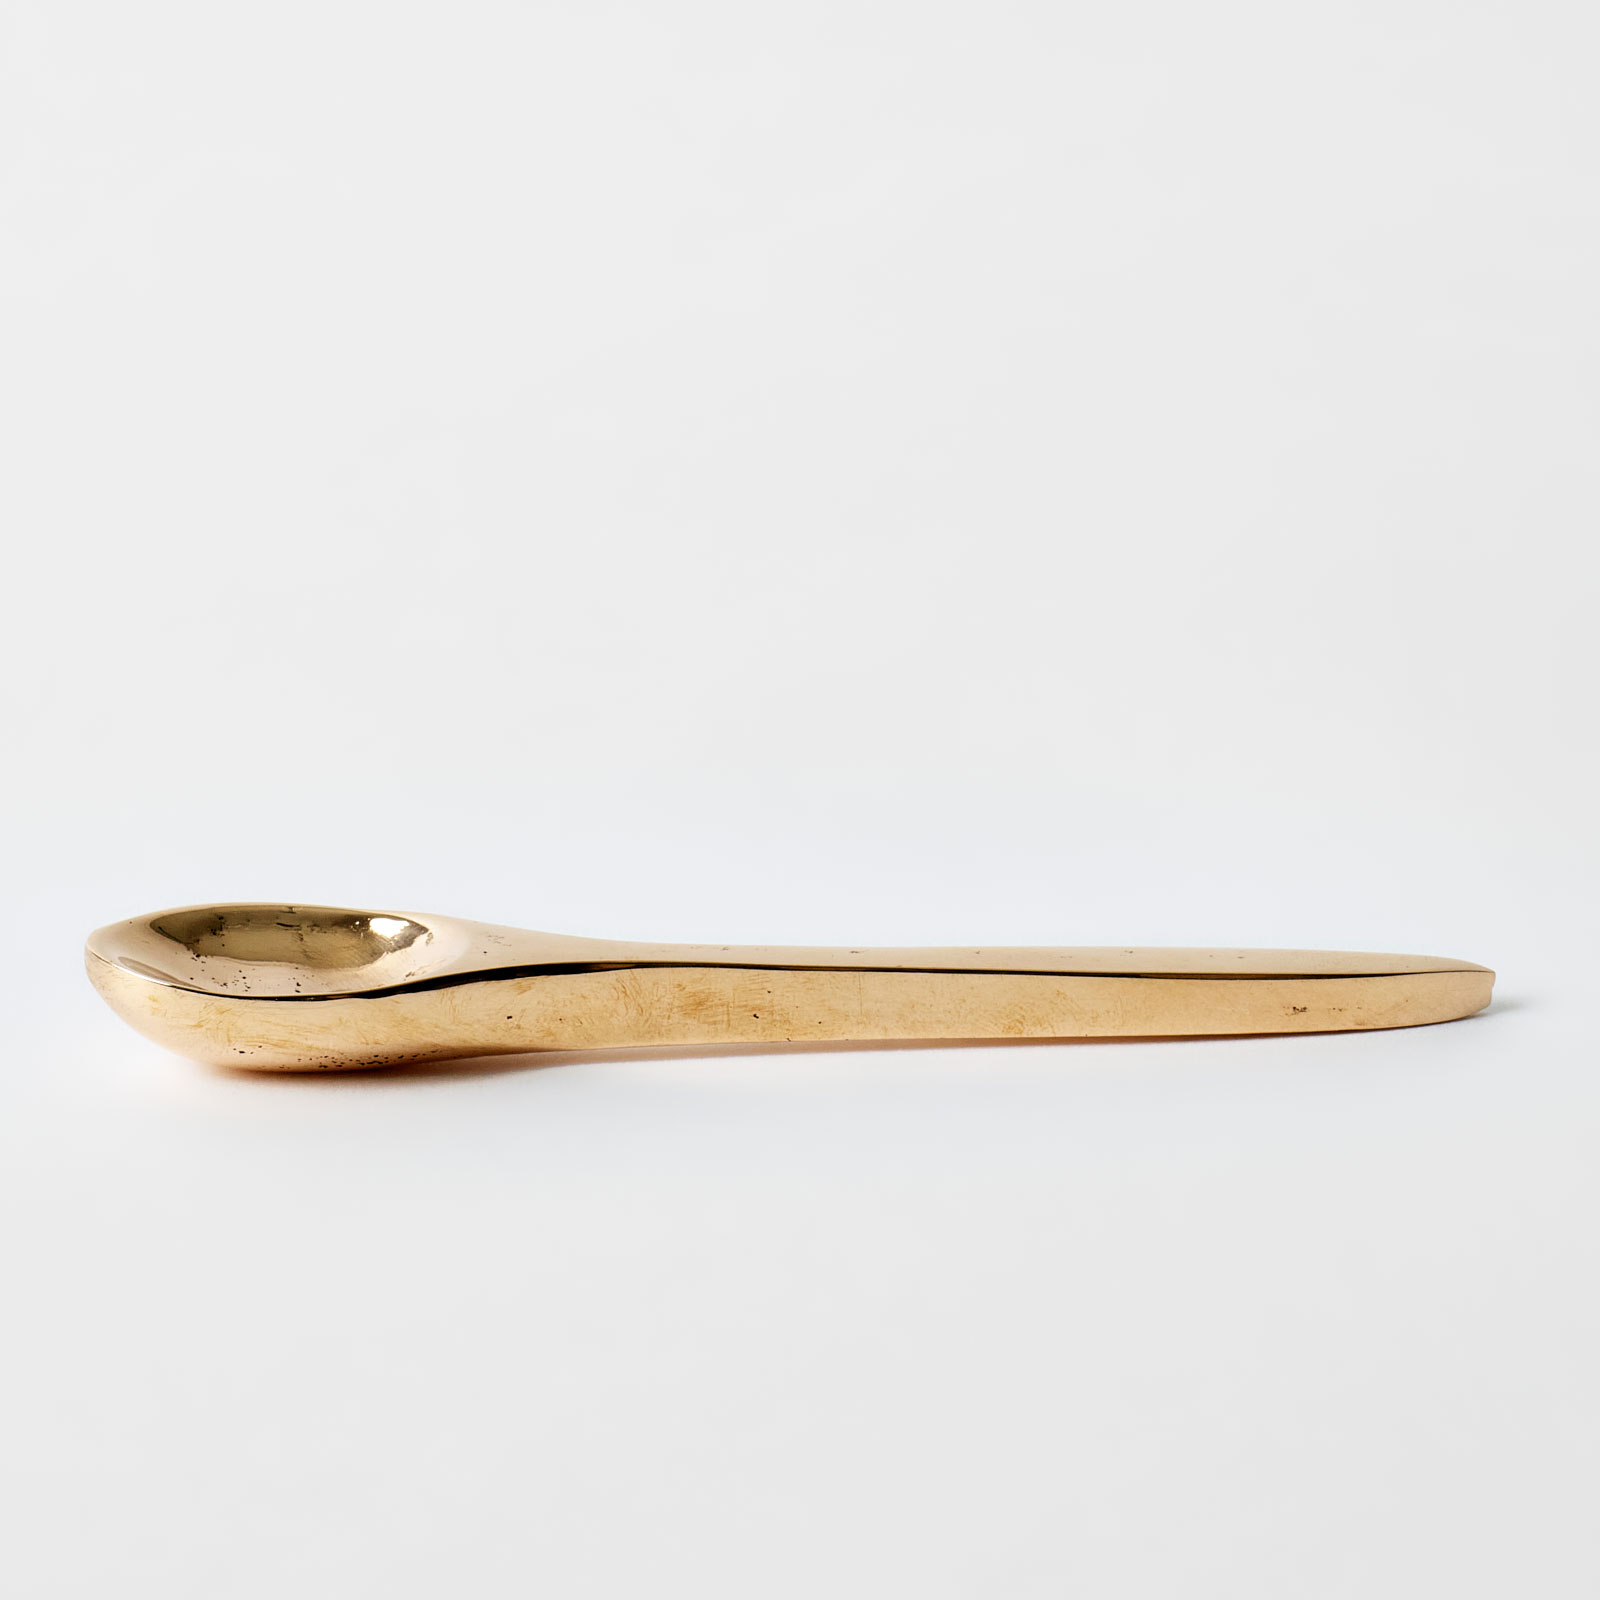 abd-bronze-spoon-2